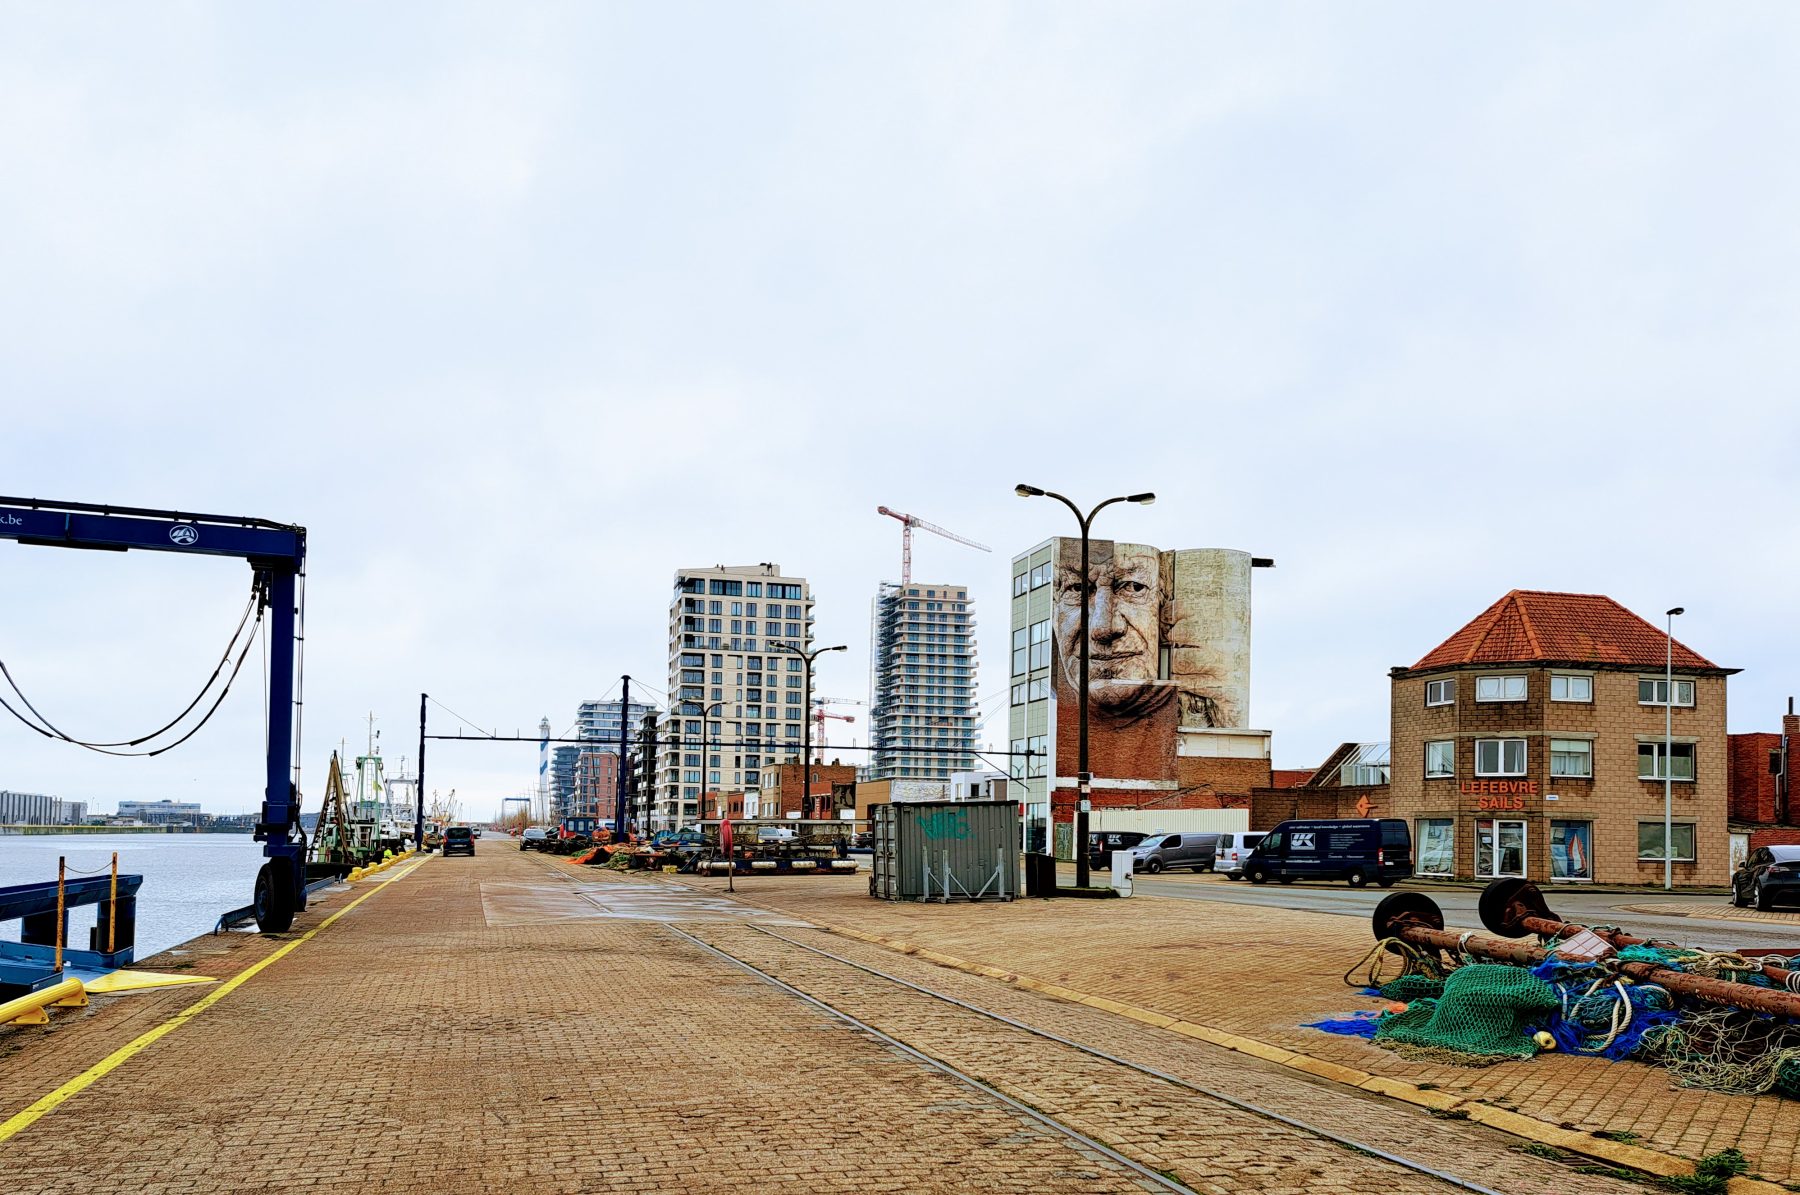 Tourisme à Ostende : bras de fer entre promoteurs immobiliers et habitants